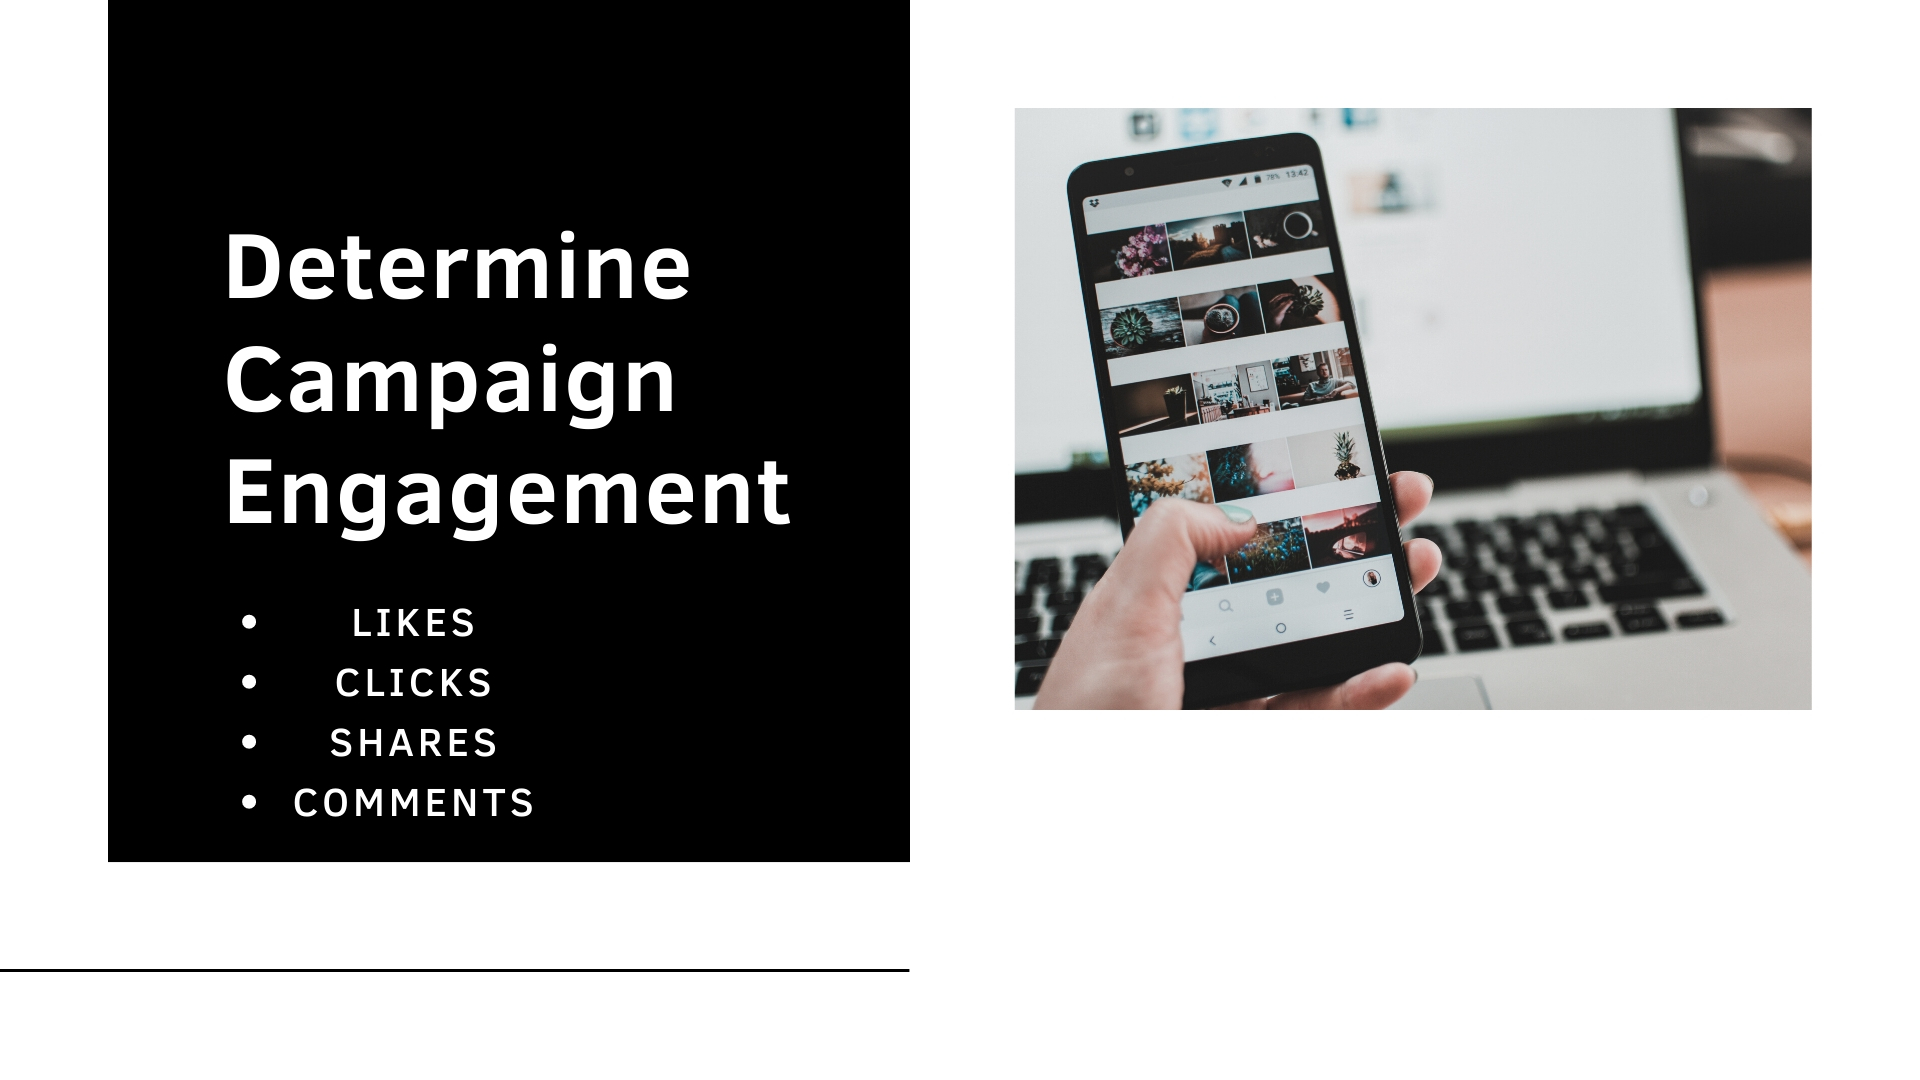 Determine Campaign Engagement